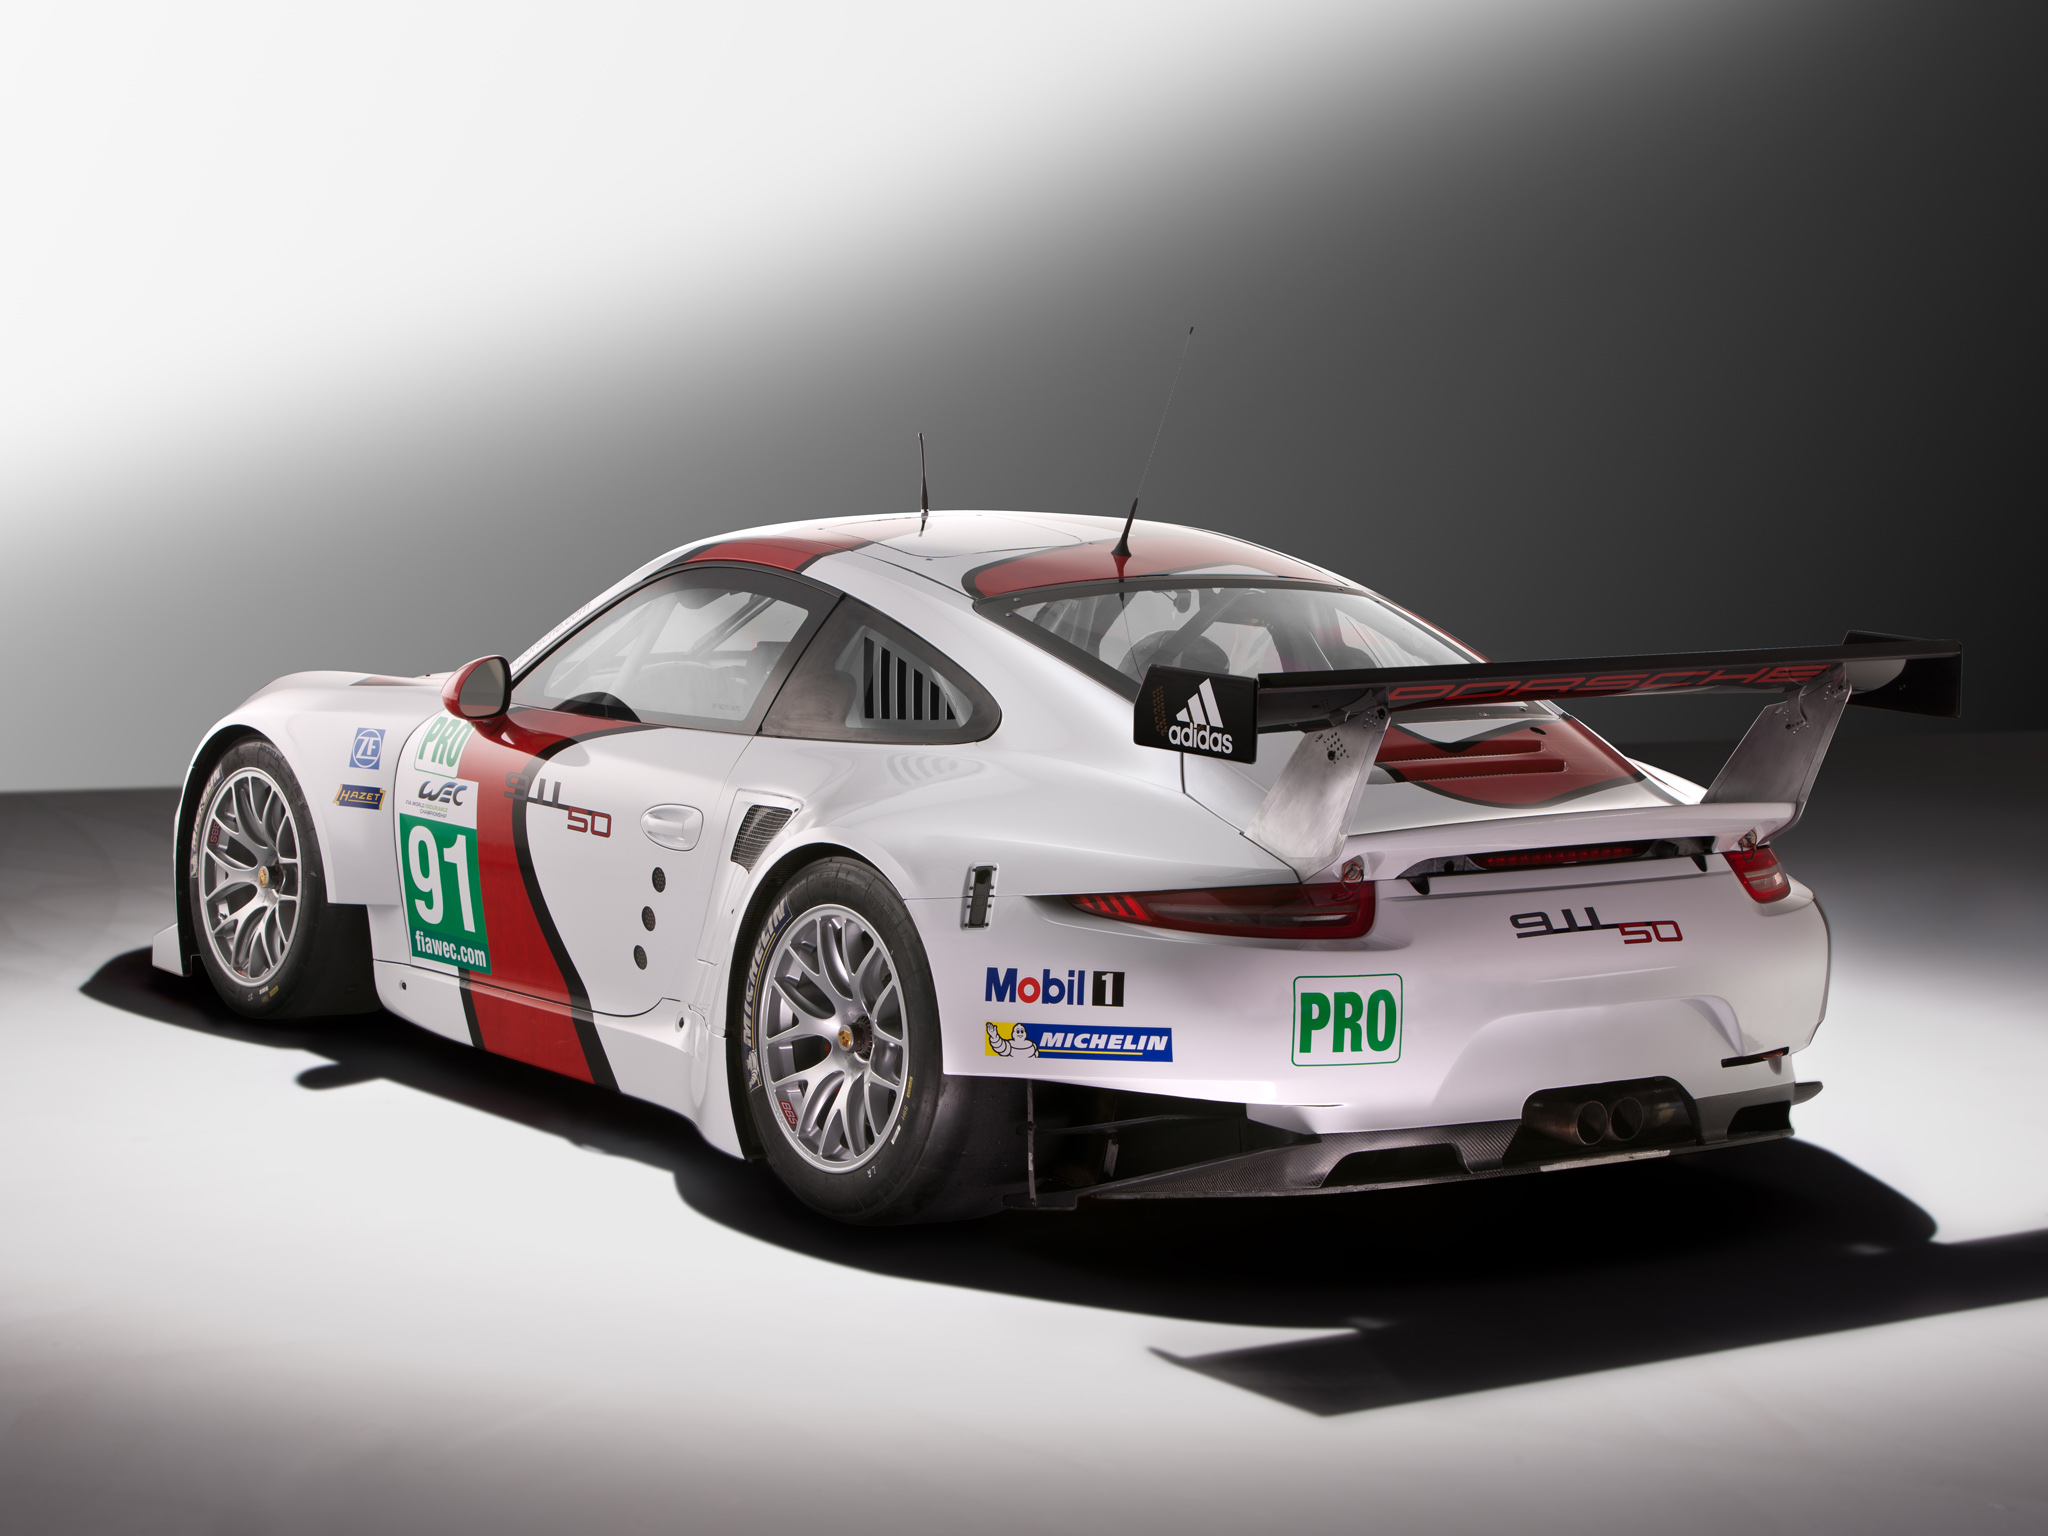 2013, Porsche, 911, Rsr, 991, Race, Racing Wallpaper